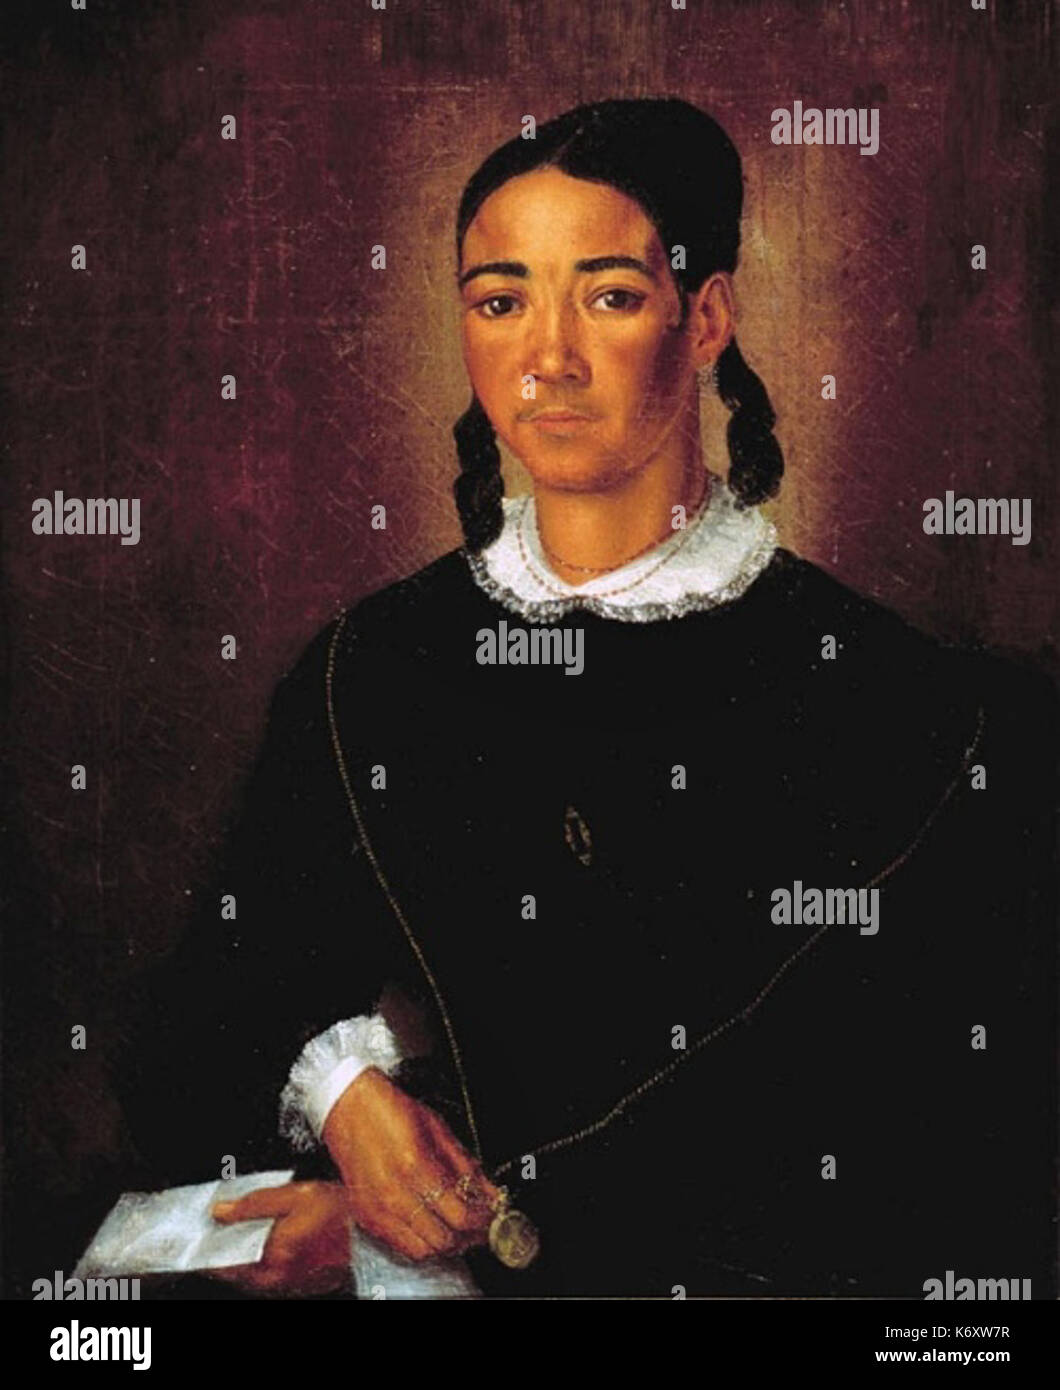 Fleischbein Portrait einer farbigen Frau 1840 Stock Photo